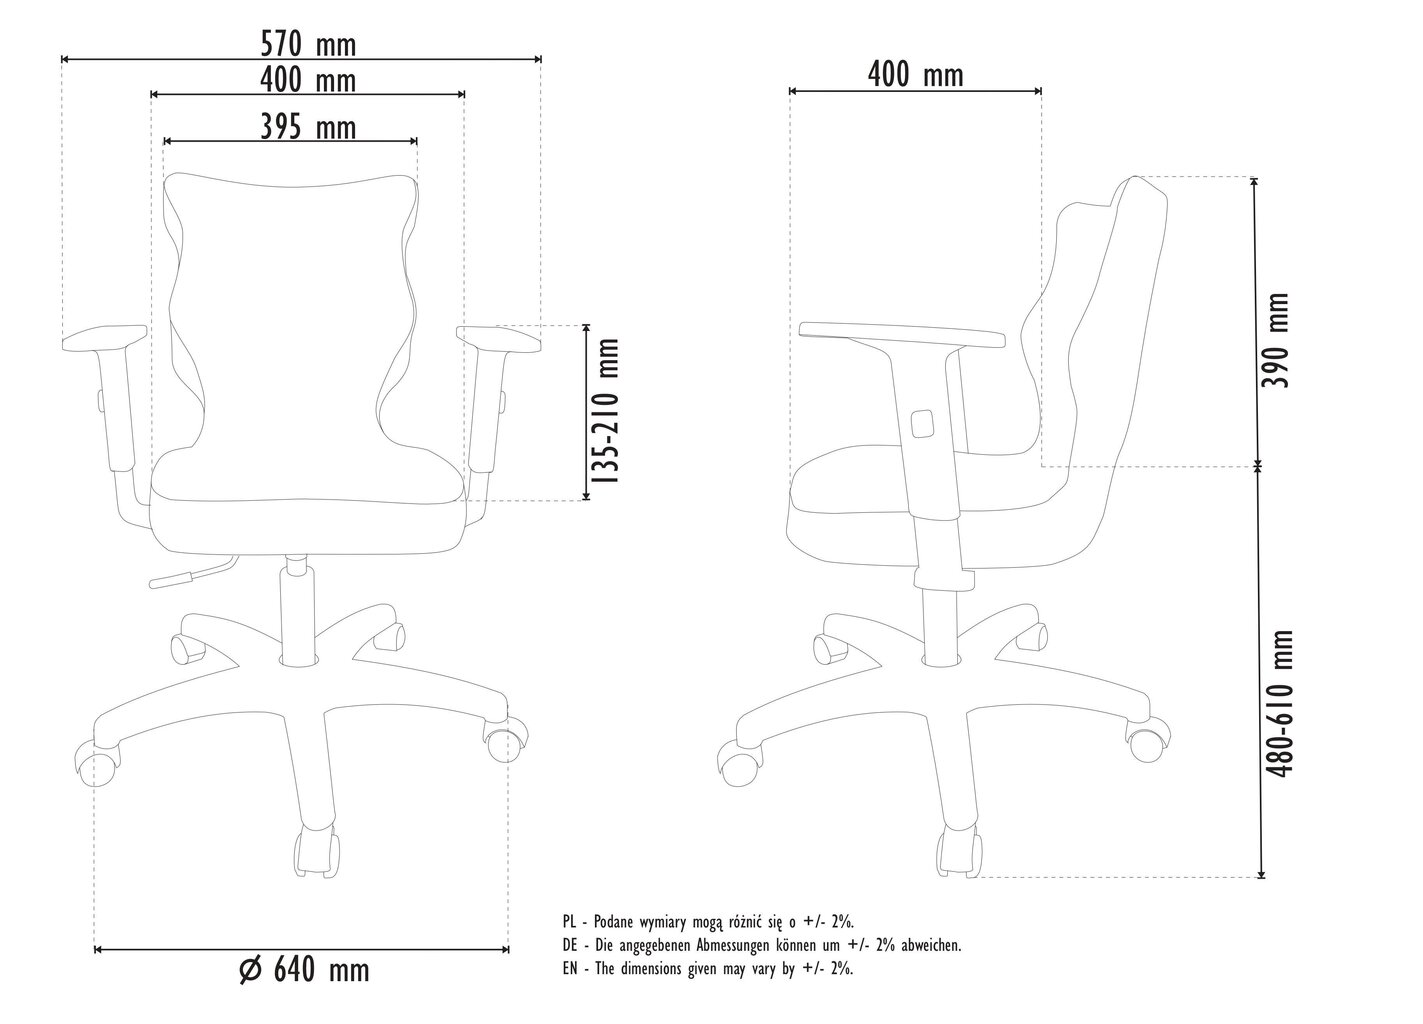 Biuro kėdė Entelo Good Chair Duo VS08 5, balta/rožinė kaina ir informacija | Biuro kėdės | pigu.lt